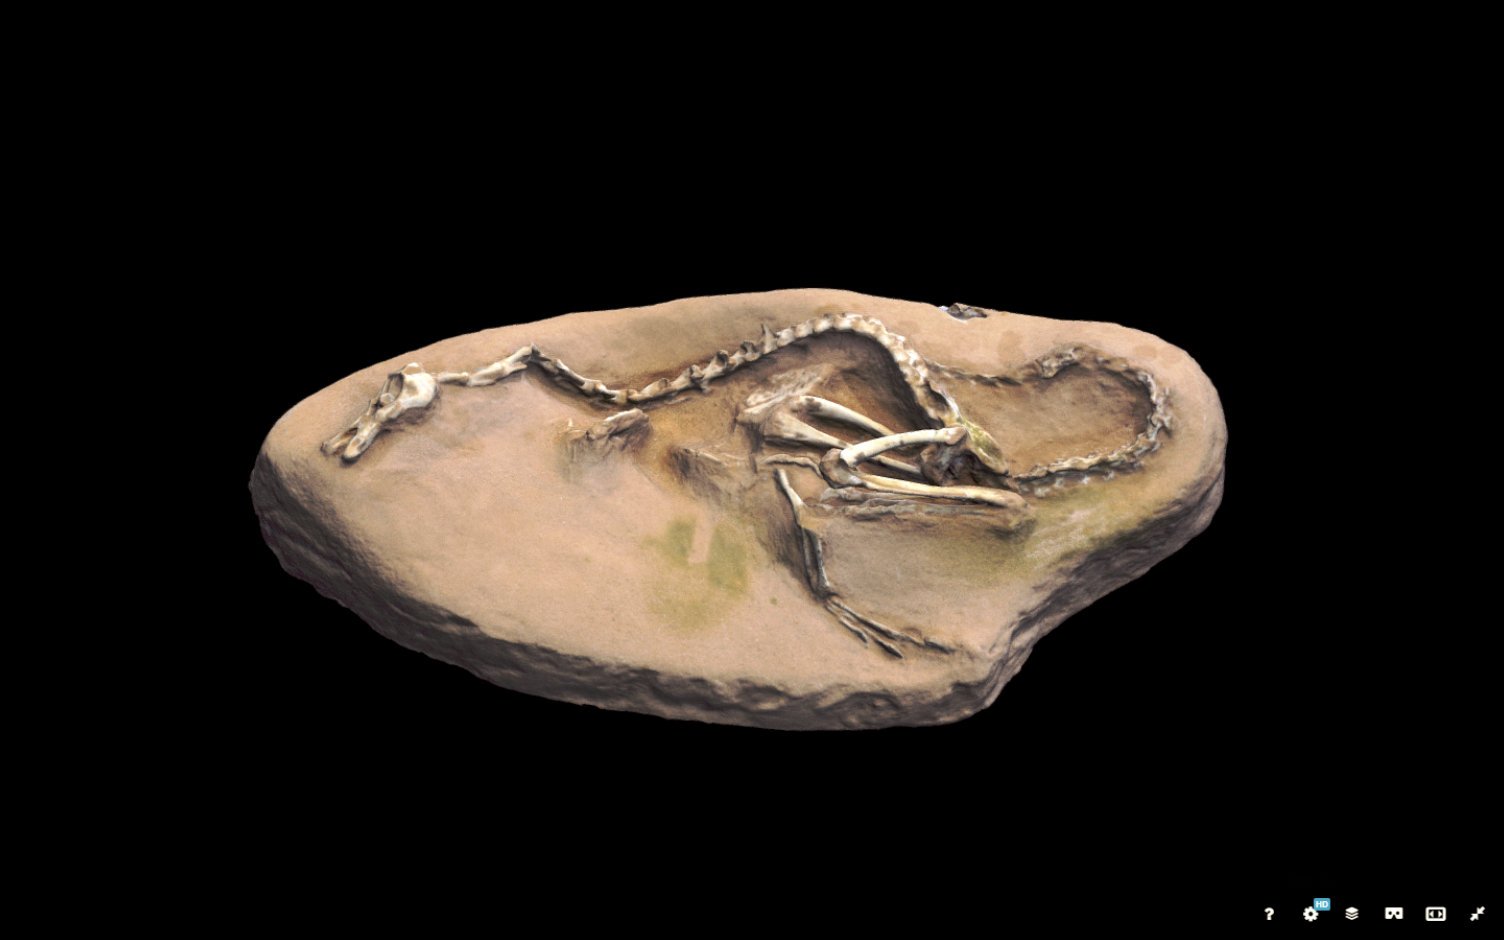 Captura del 3d de Sketchfab de los restos de dinosaurio hallado